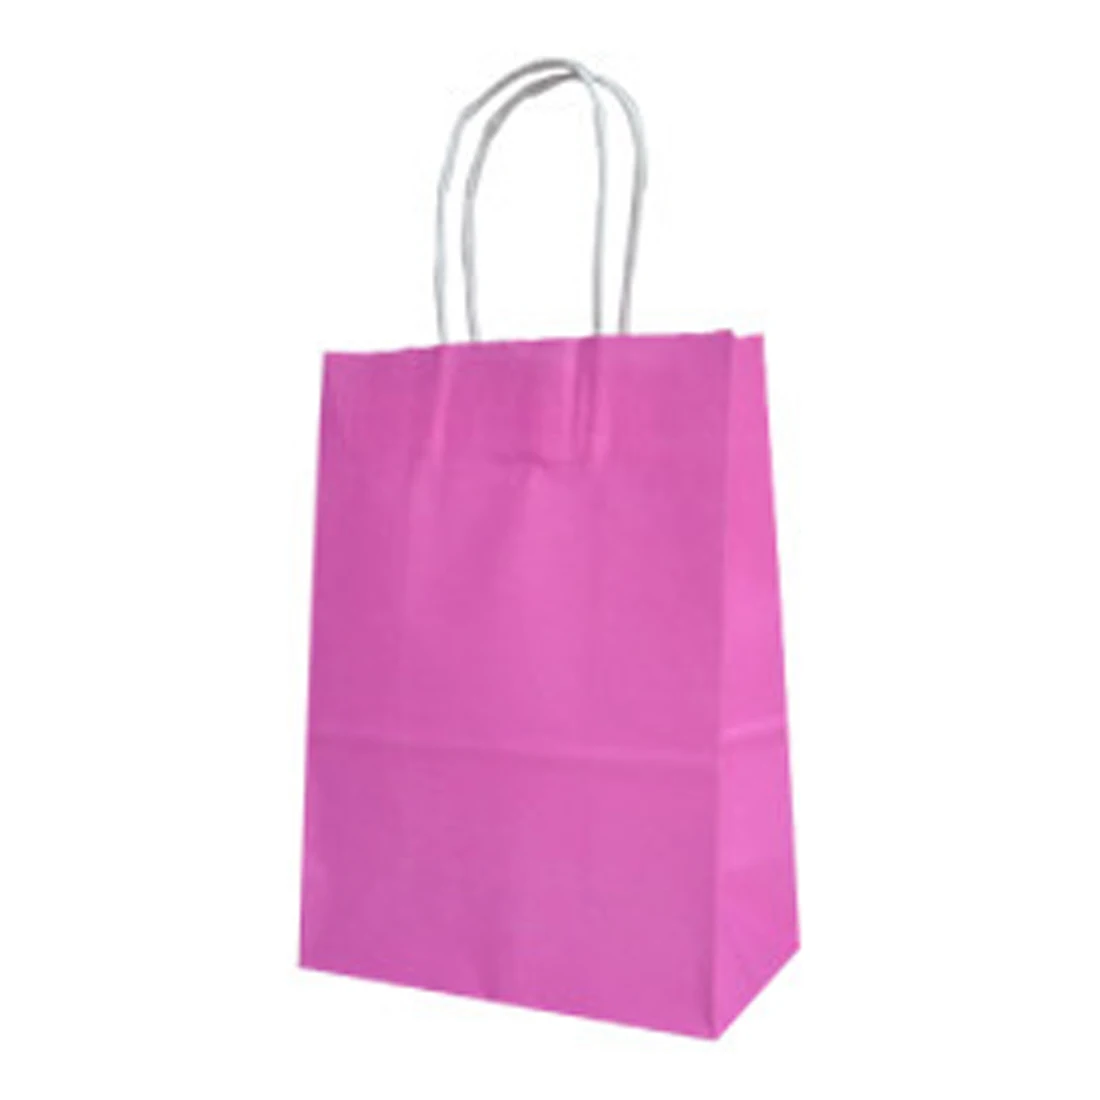 8 цветов, коровья кожа, Подарочная коробка, коробка для конфет, 10 штук/партия, большой крафт-бумажный мешок с ручкой, перерабатываемый мешок, модная одежда - Цвет: Pink